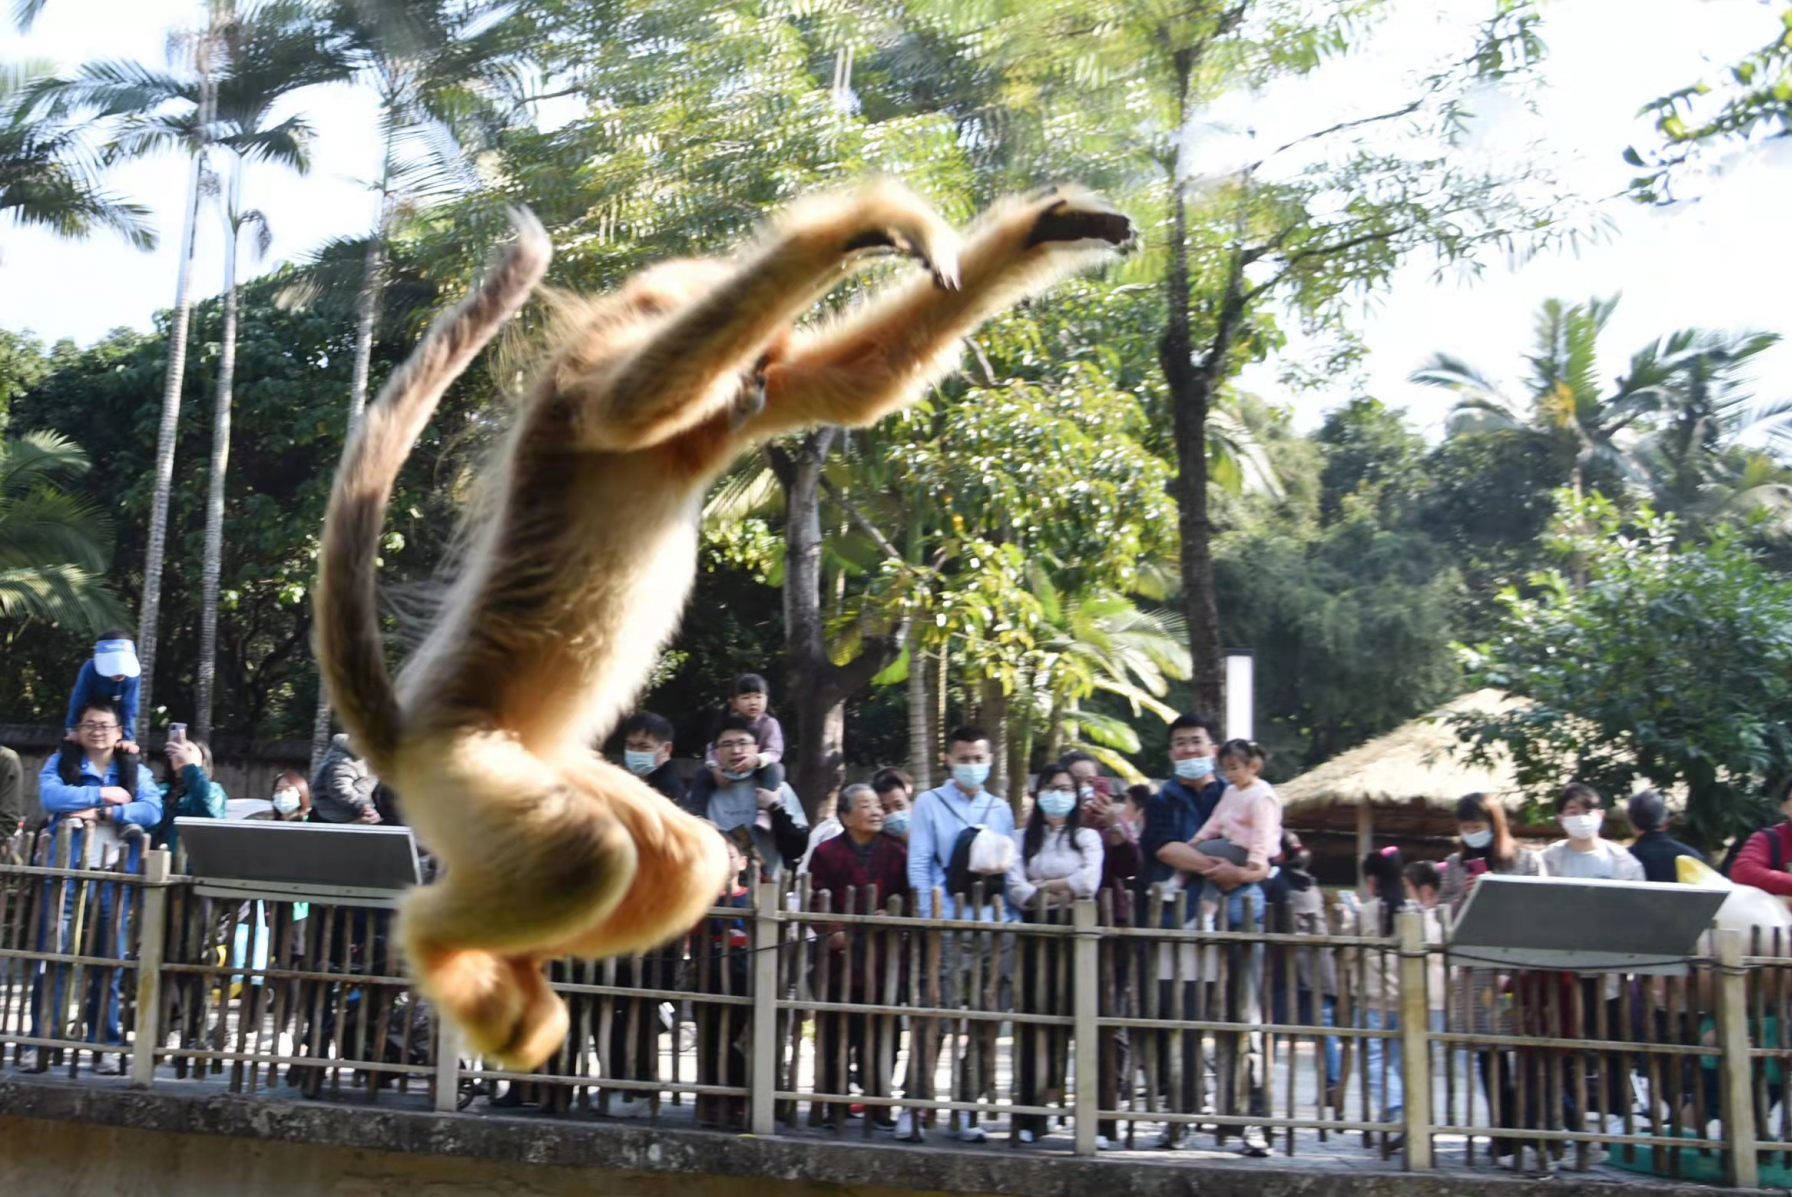 深圳野生动物园小动物萌态十足受游客喜爱